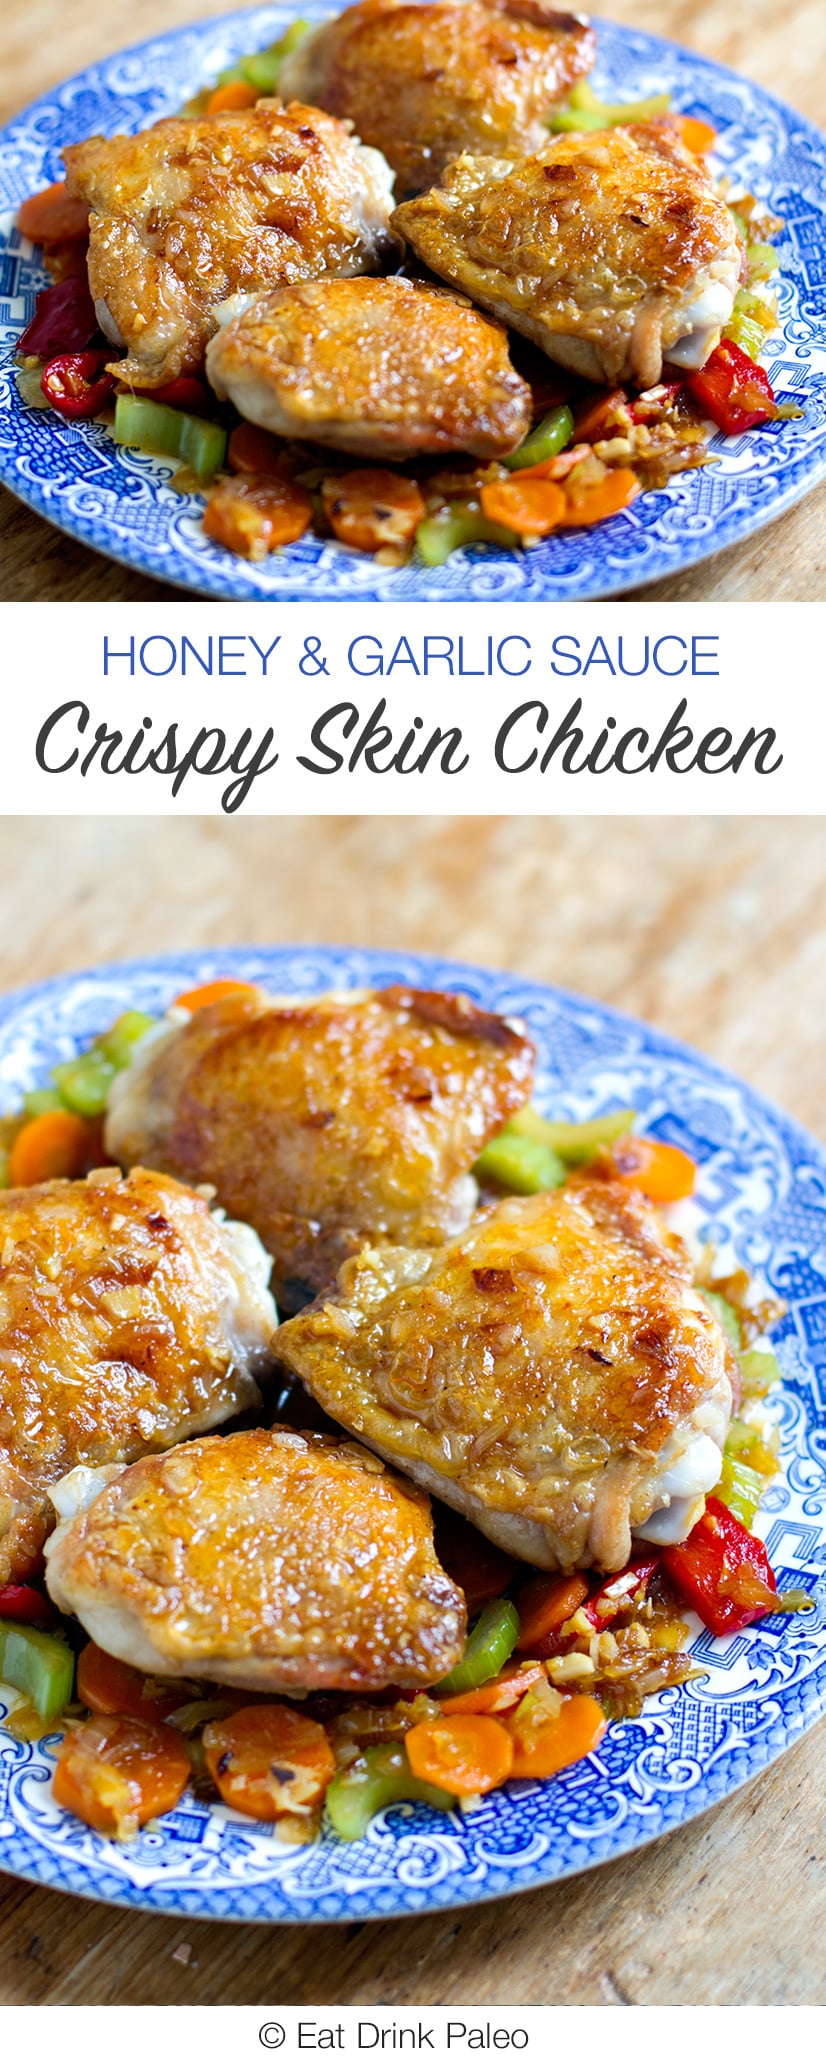 Crispy Skin Chicken with Honey & Garlic Sauce